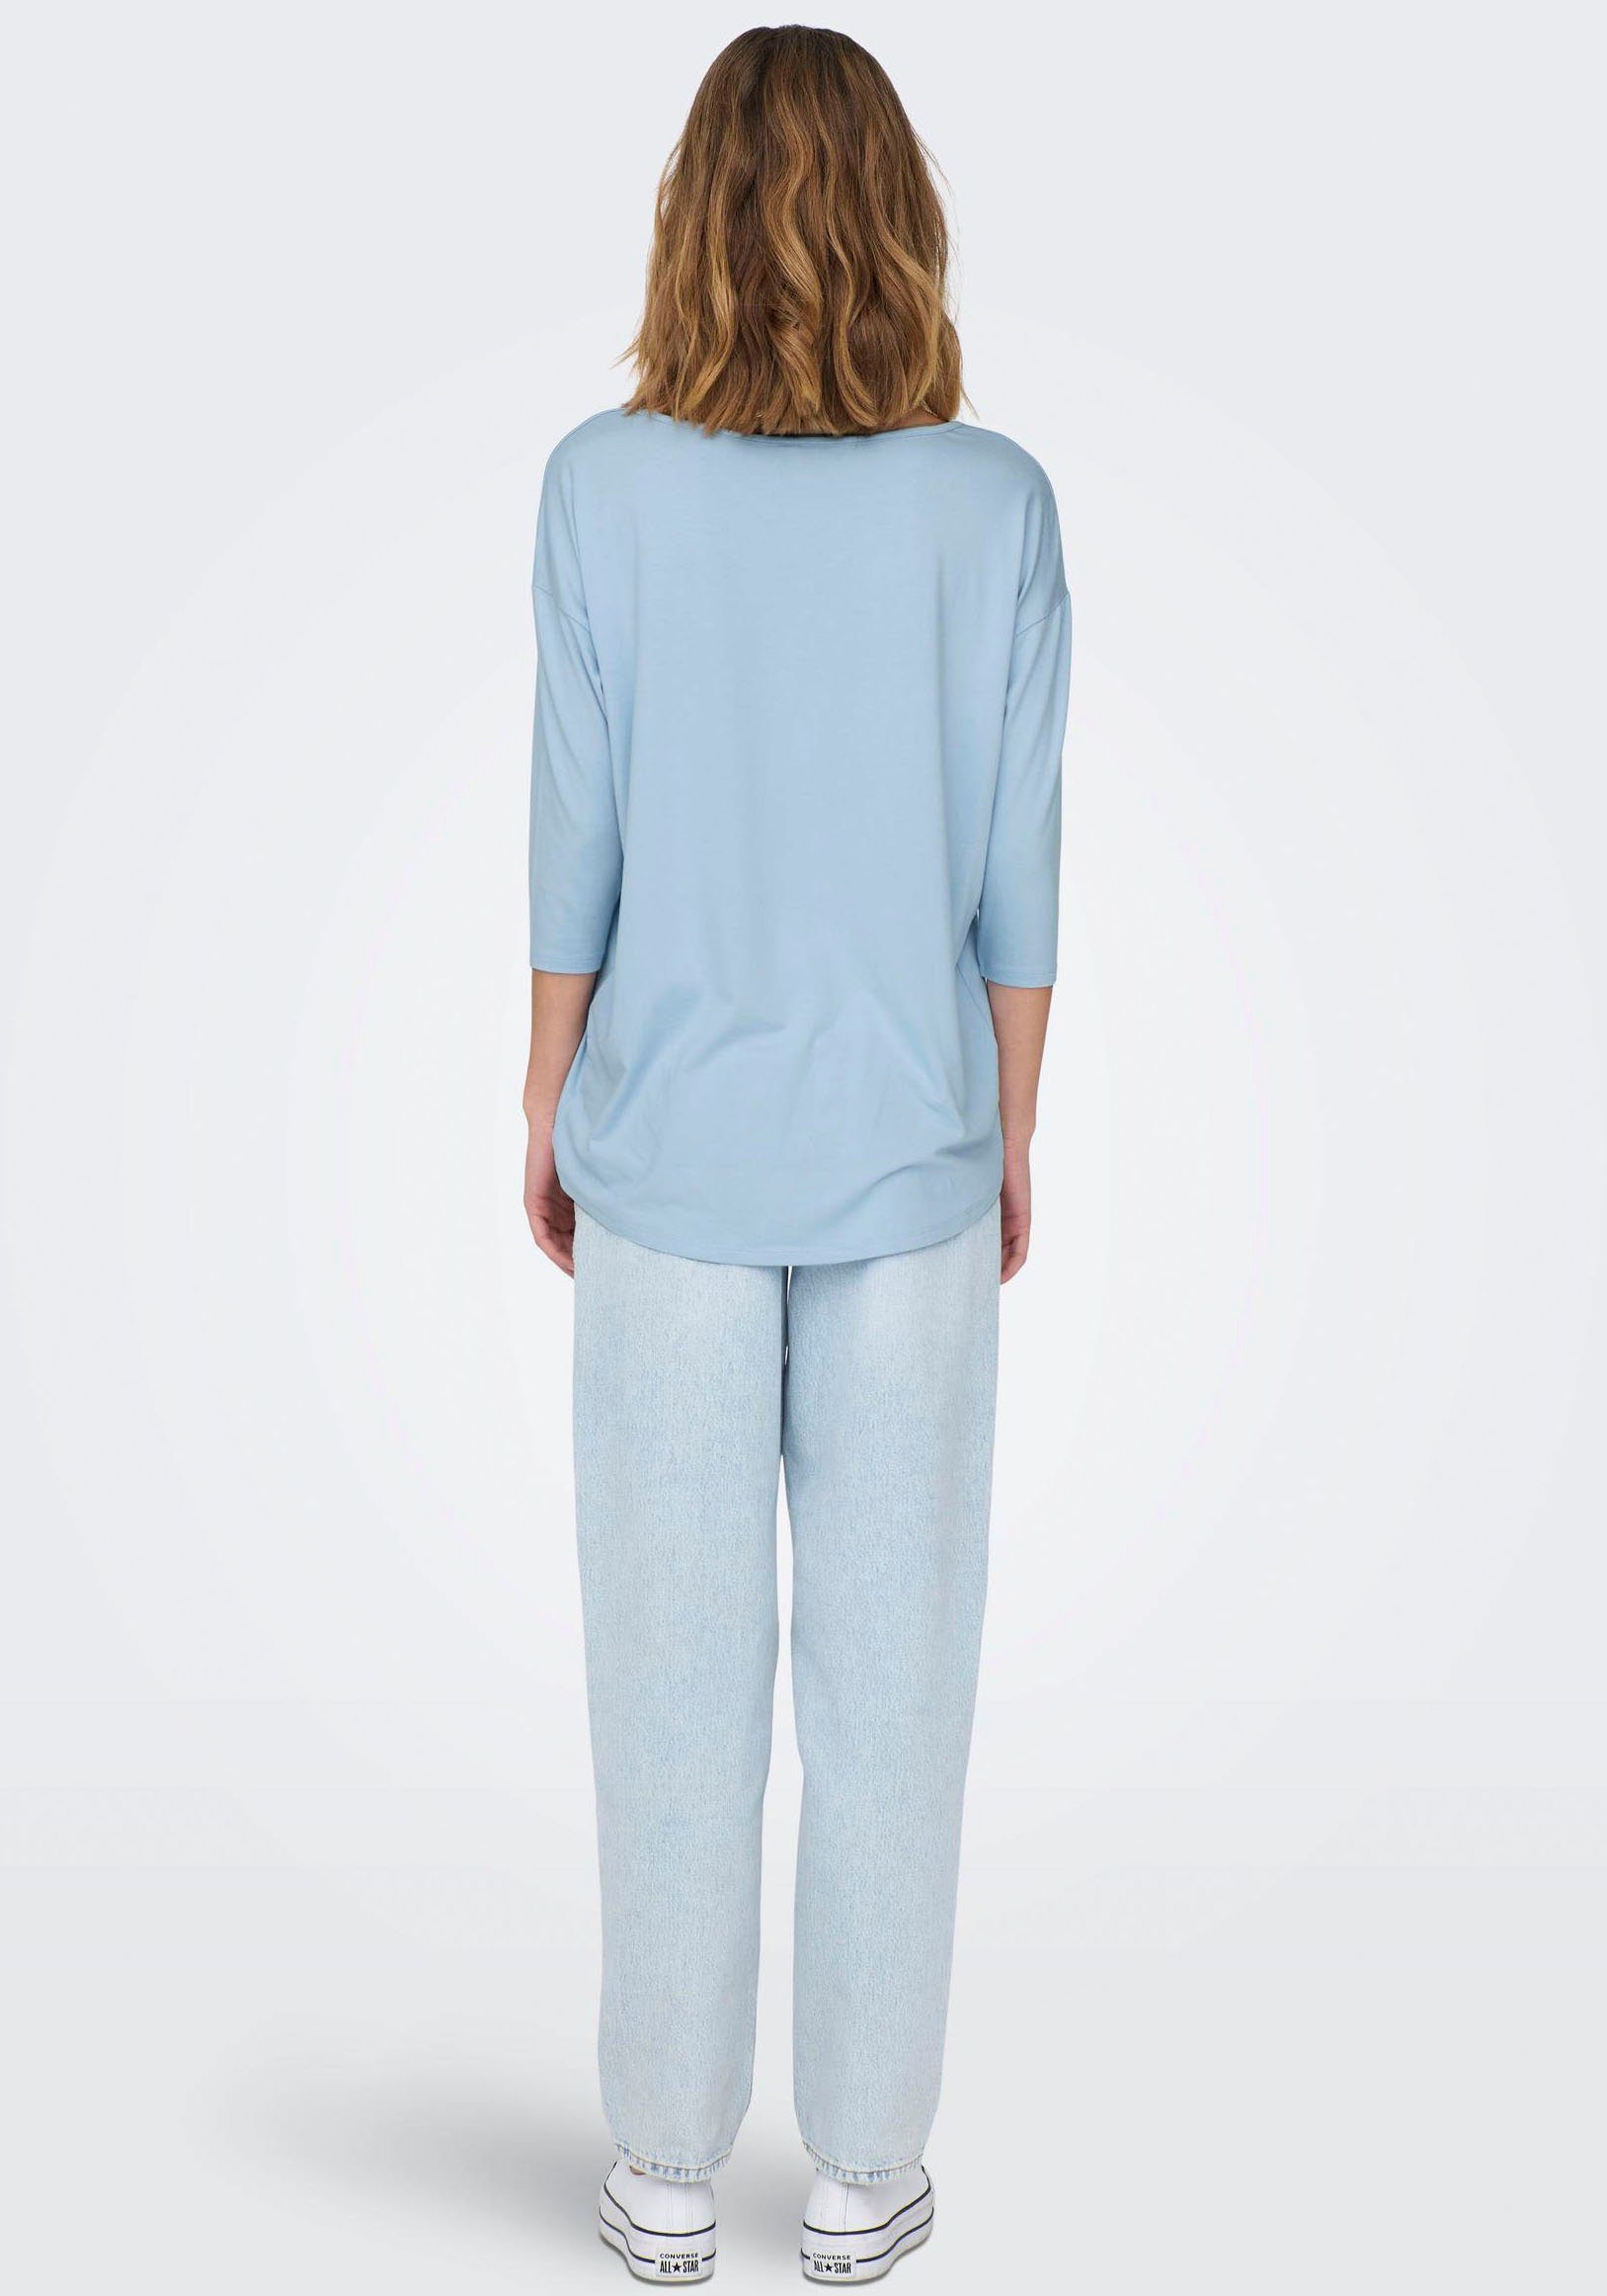 TAPE CS ONLMOSTER TOP 3/4-Arm-Shirt ONLY Detail:Melange Cashmere SHOULDER Blue 3/4